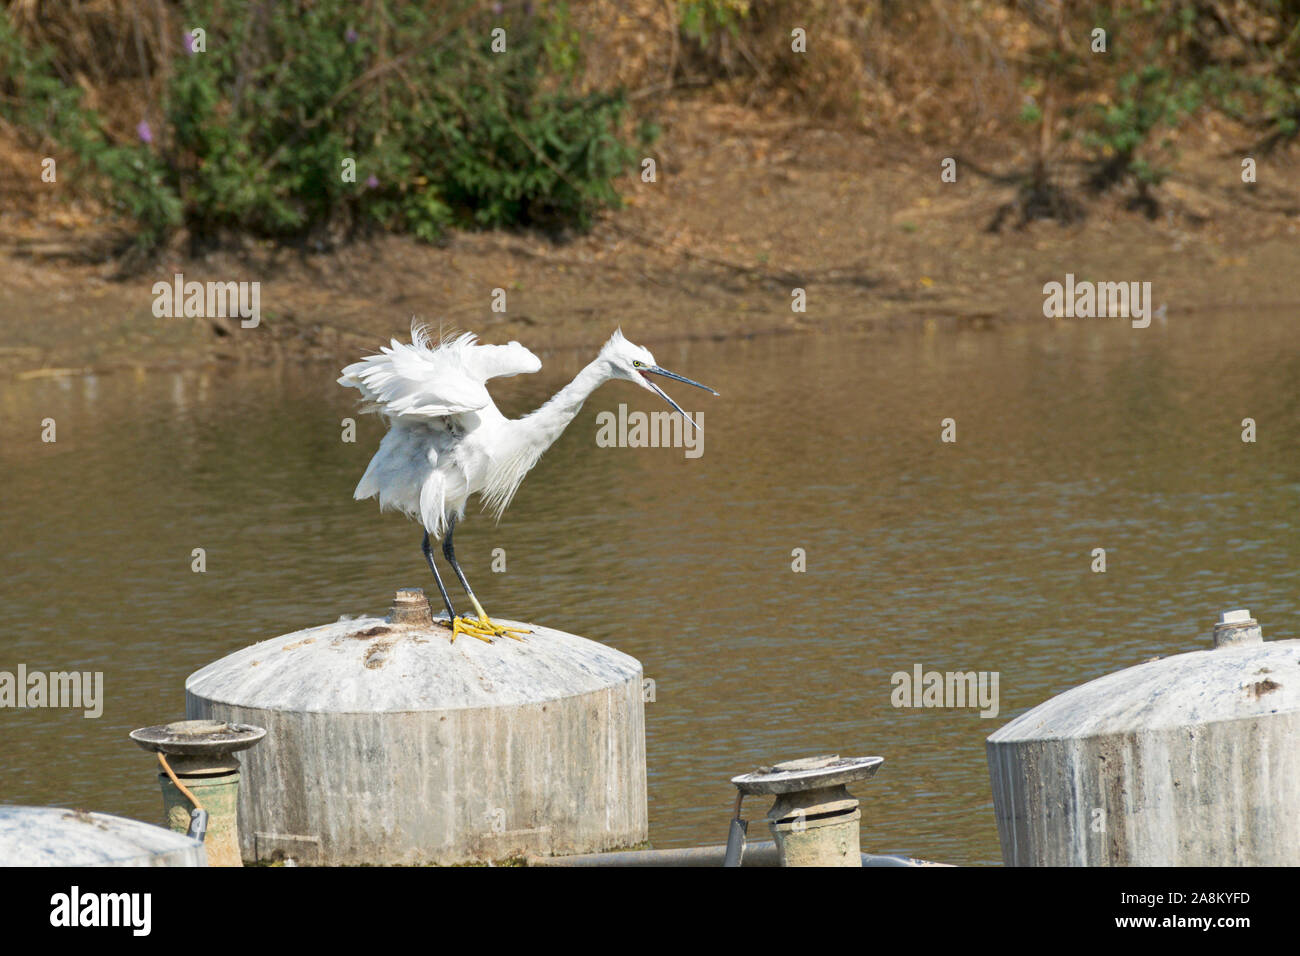 White wütend auf der Suche Seidenreiher Egretta garzetta Vogel mit gelben Füßen thront auf einem Tank in Tel Aviv Israel City Park Teich Stockfoto